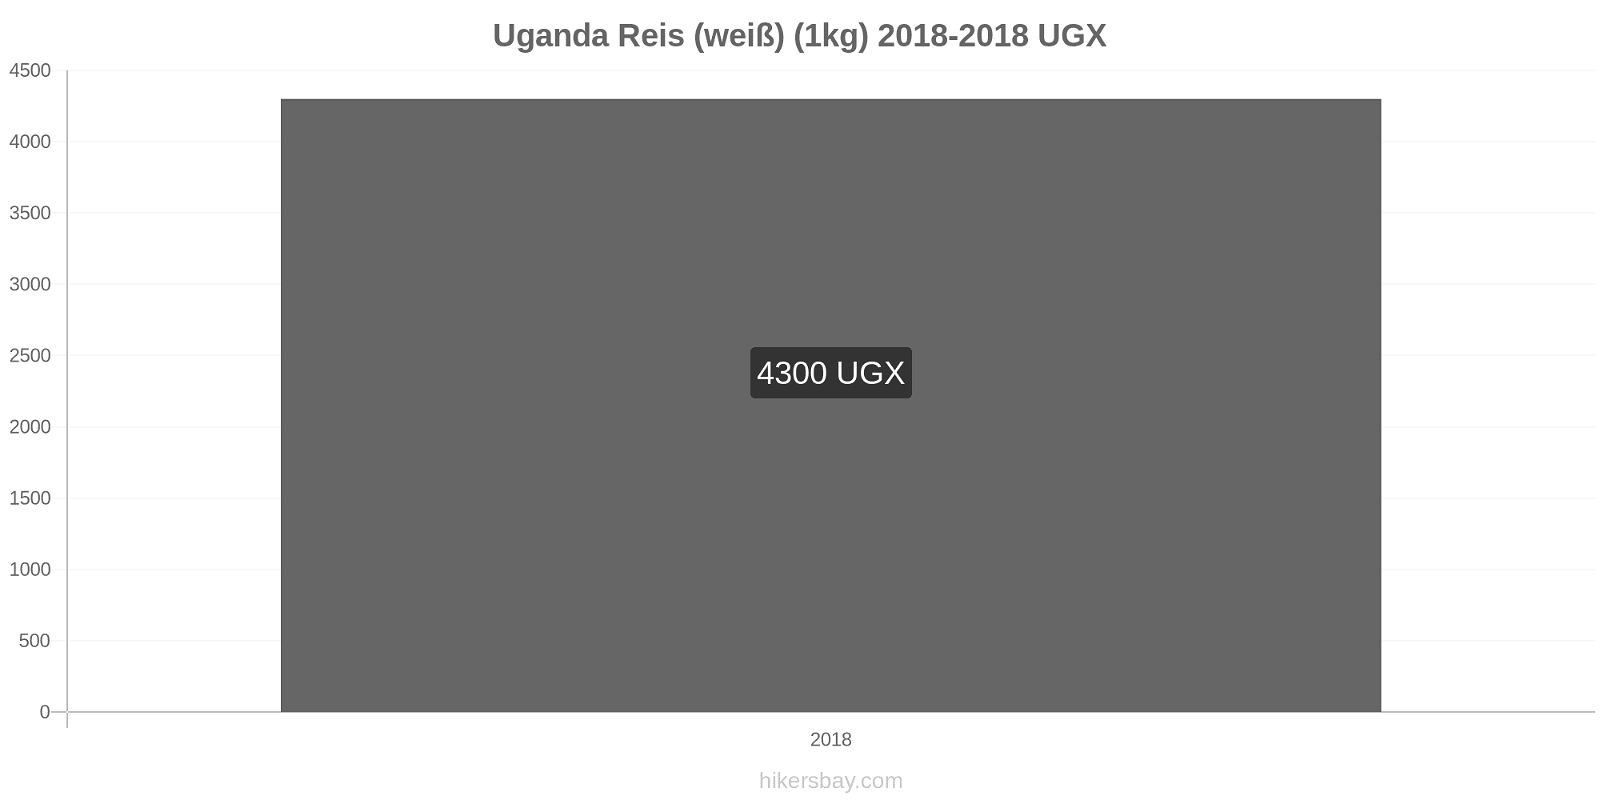 Uganda Preisänderungen Reis (weiß) (1kg) hikersbay.com